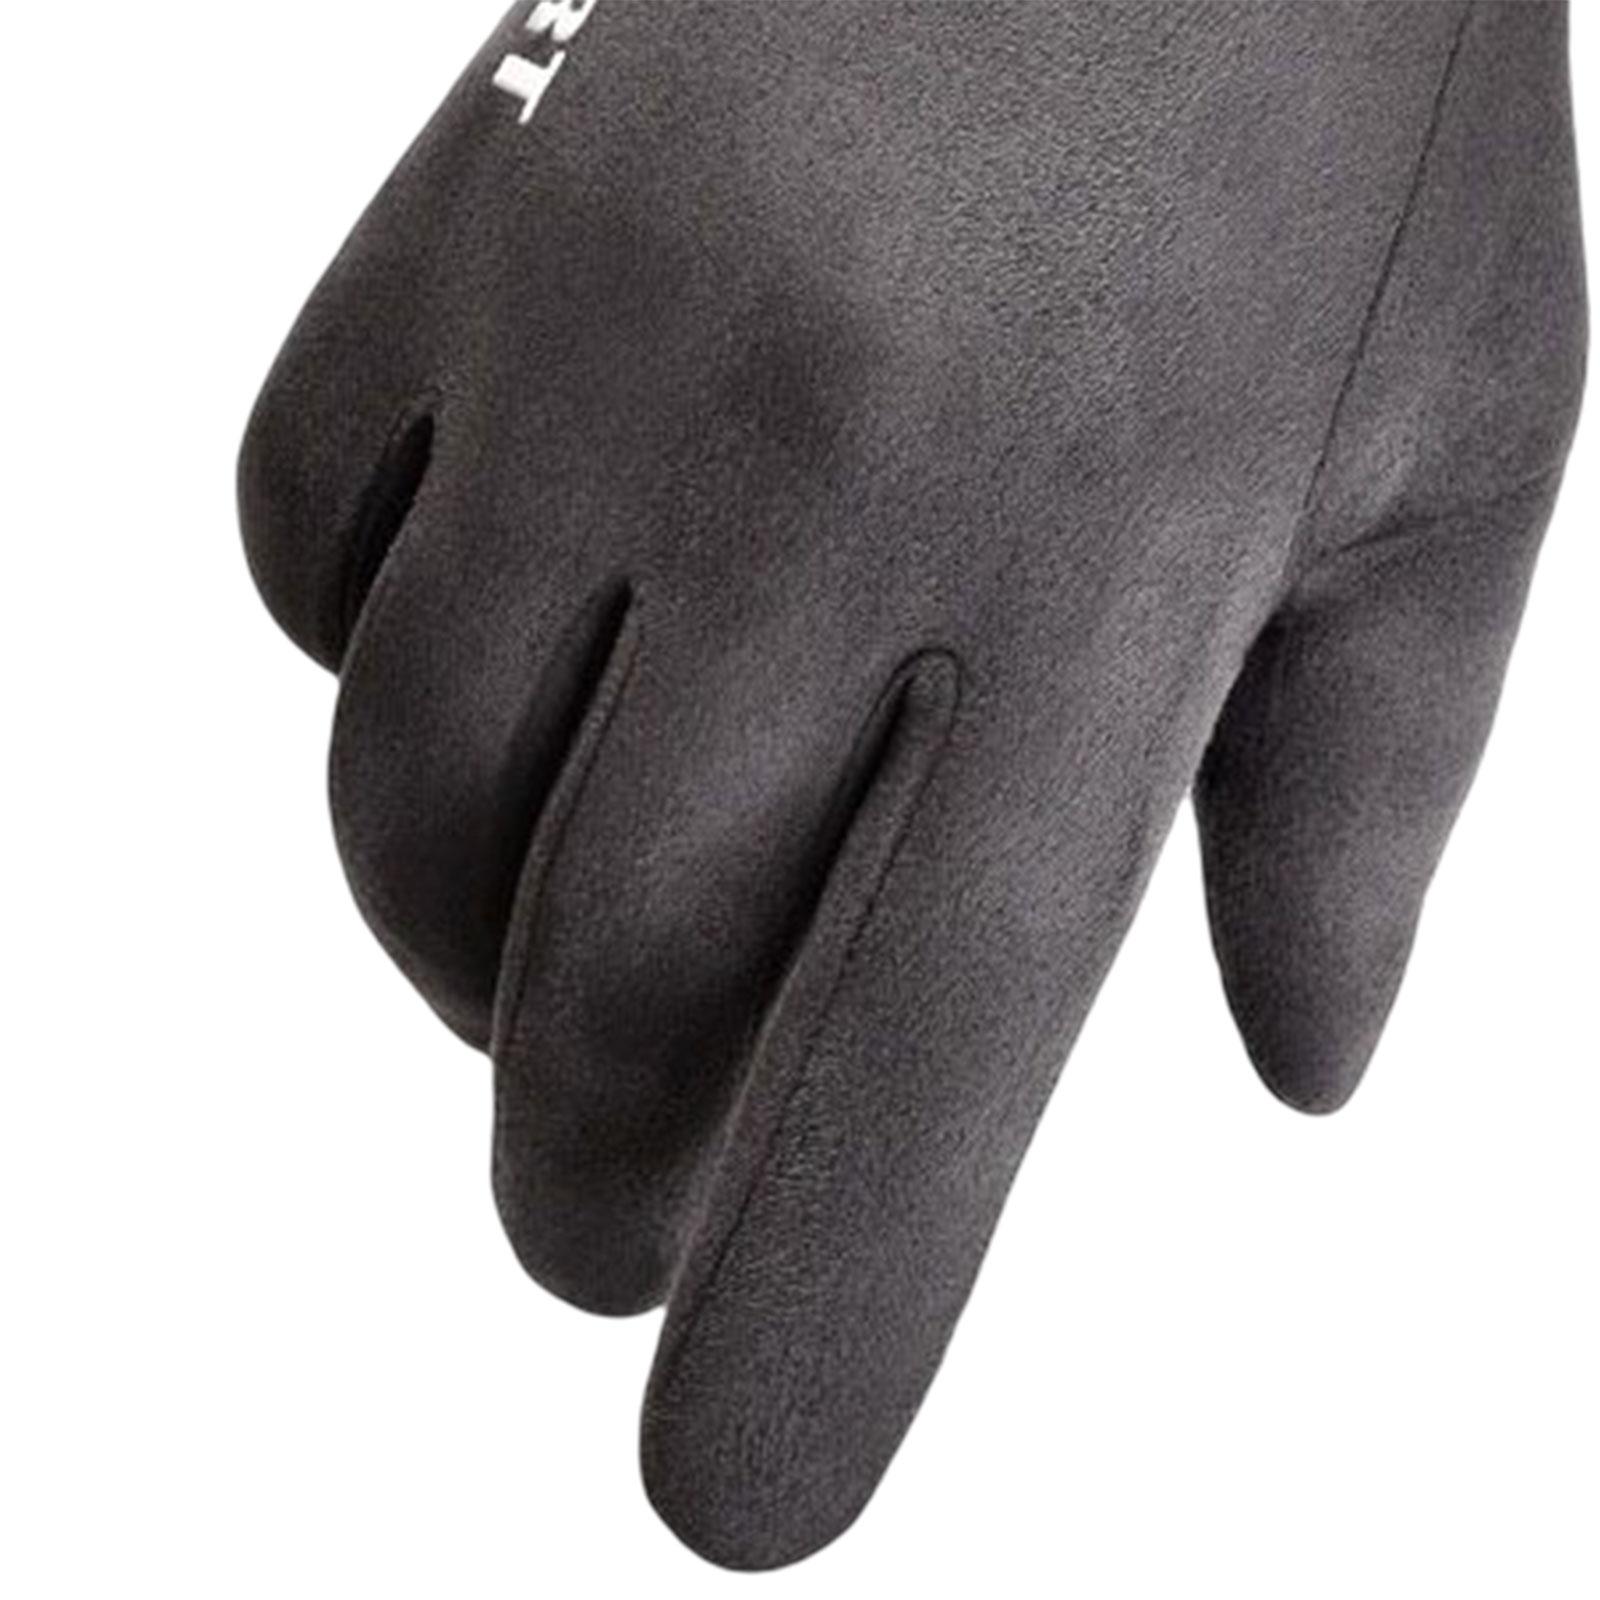 Winter Warm Sports Gloves Suede Anti Slip for Running Skating Cold Weather Men Dark Gray